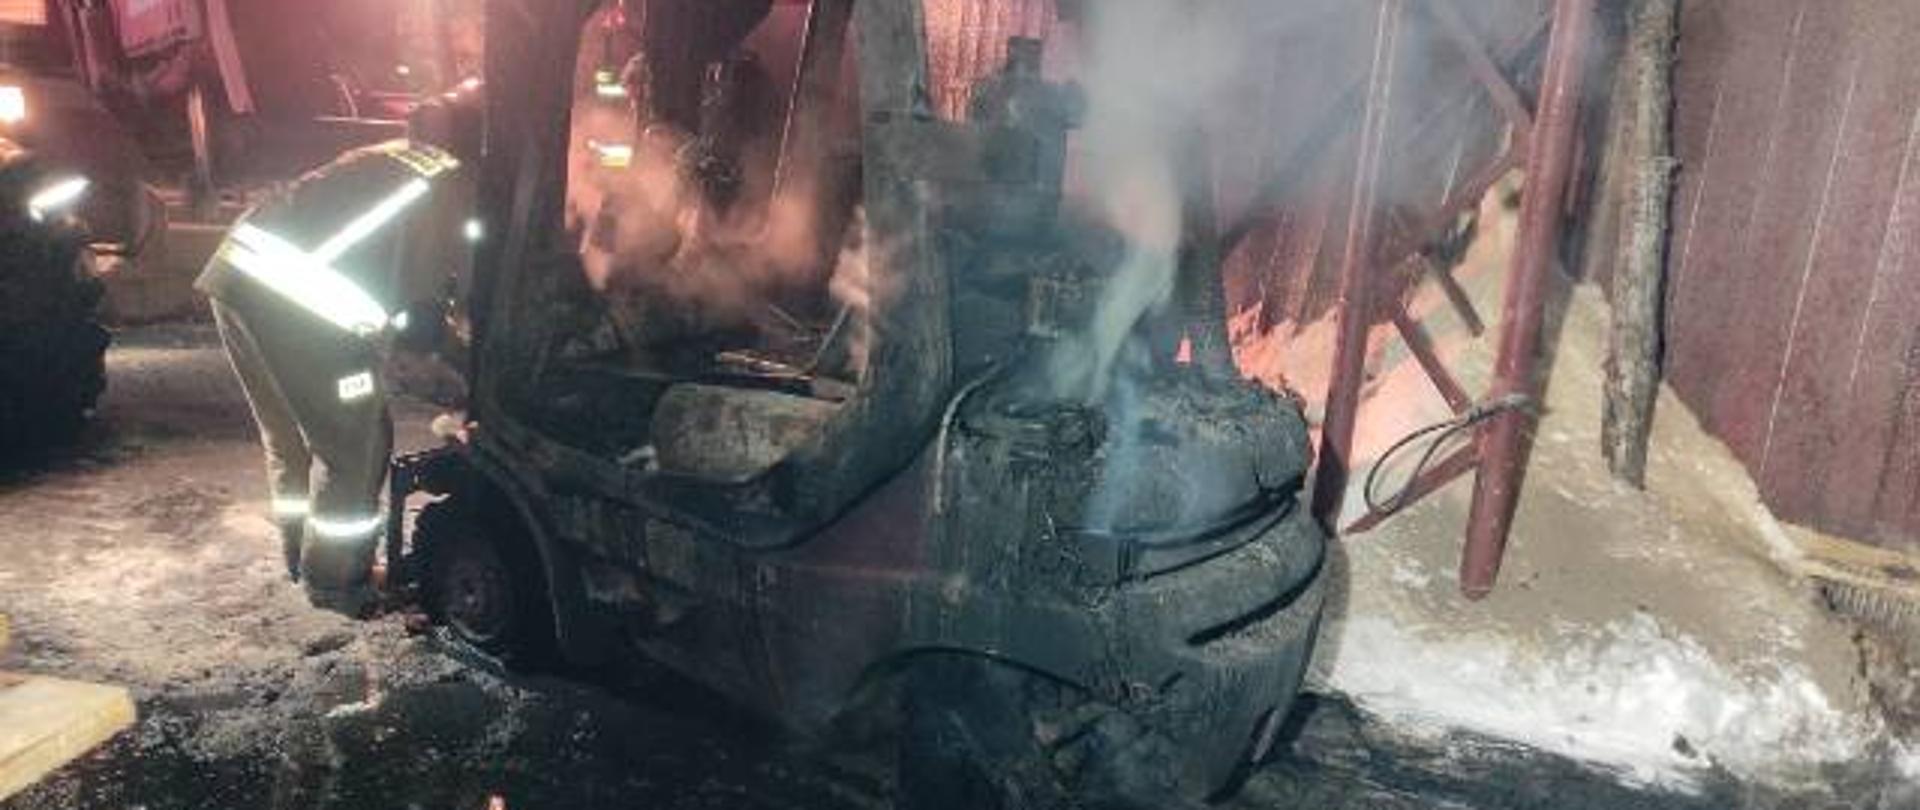 Zdjęcie przedstawia spalony wózek widłowy w skutek pożaru. Z maszyny unosi się jeszcze dym. Z lewej strony wózka stoi strażak ubrany w żółte ubranie specjalne. W tle widać ścianę budynku. Zdjęcie wykonane w porze nocnej. 